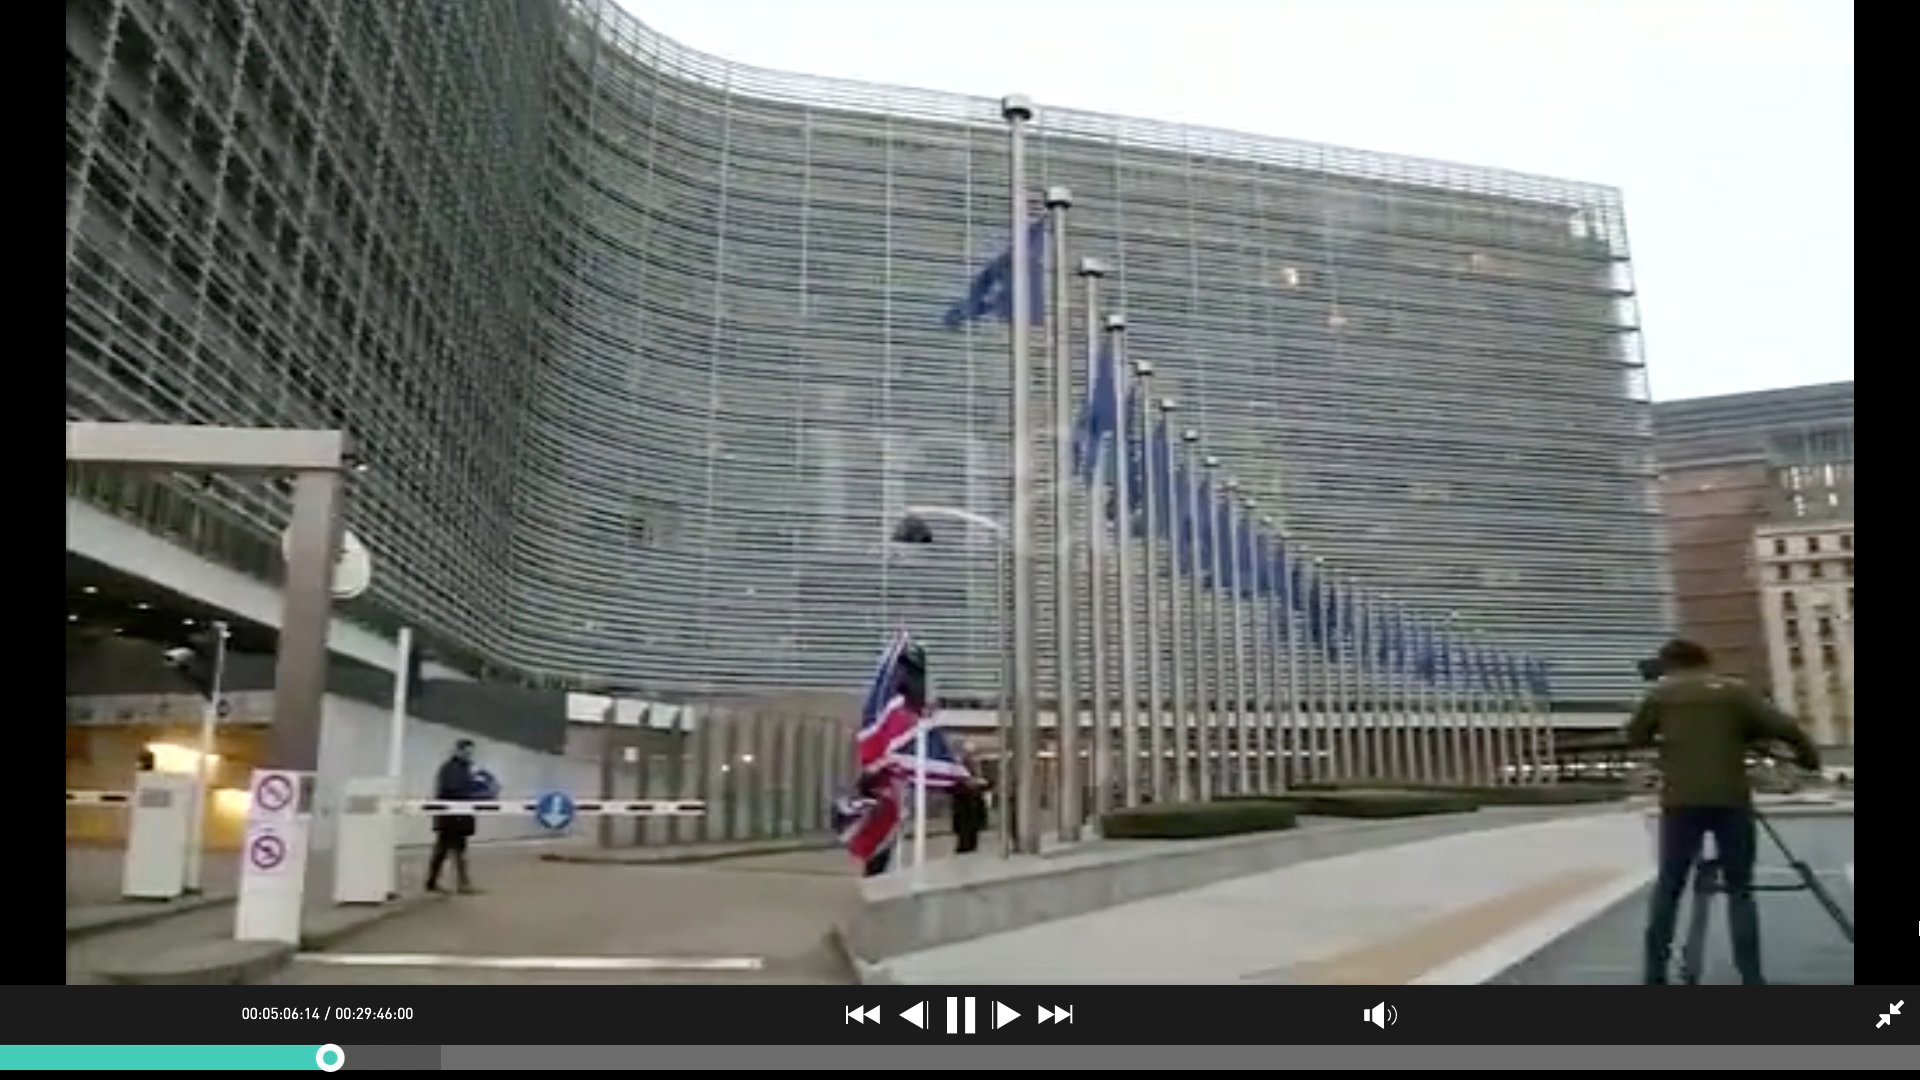 La capture d’écran de la séquence d’archives sur la descente de l’Union Jack devant la commission européenne dans le sujet « Brexit : l’Europe montre la sortie » (ID Notice : 5770037001013)